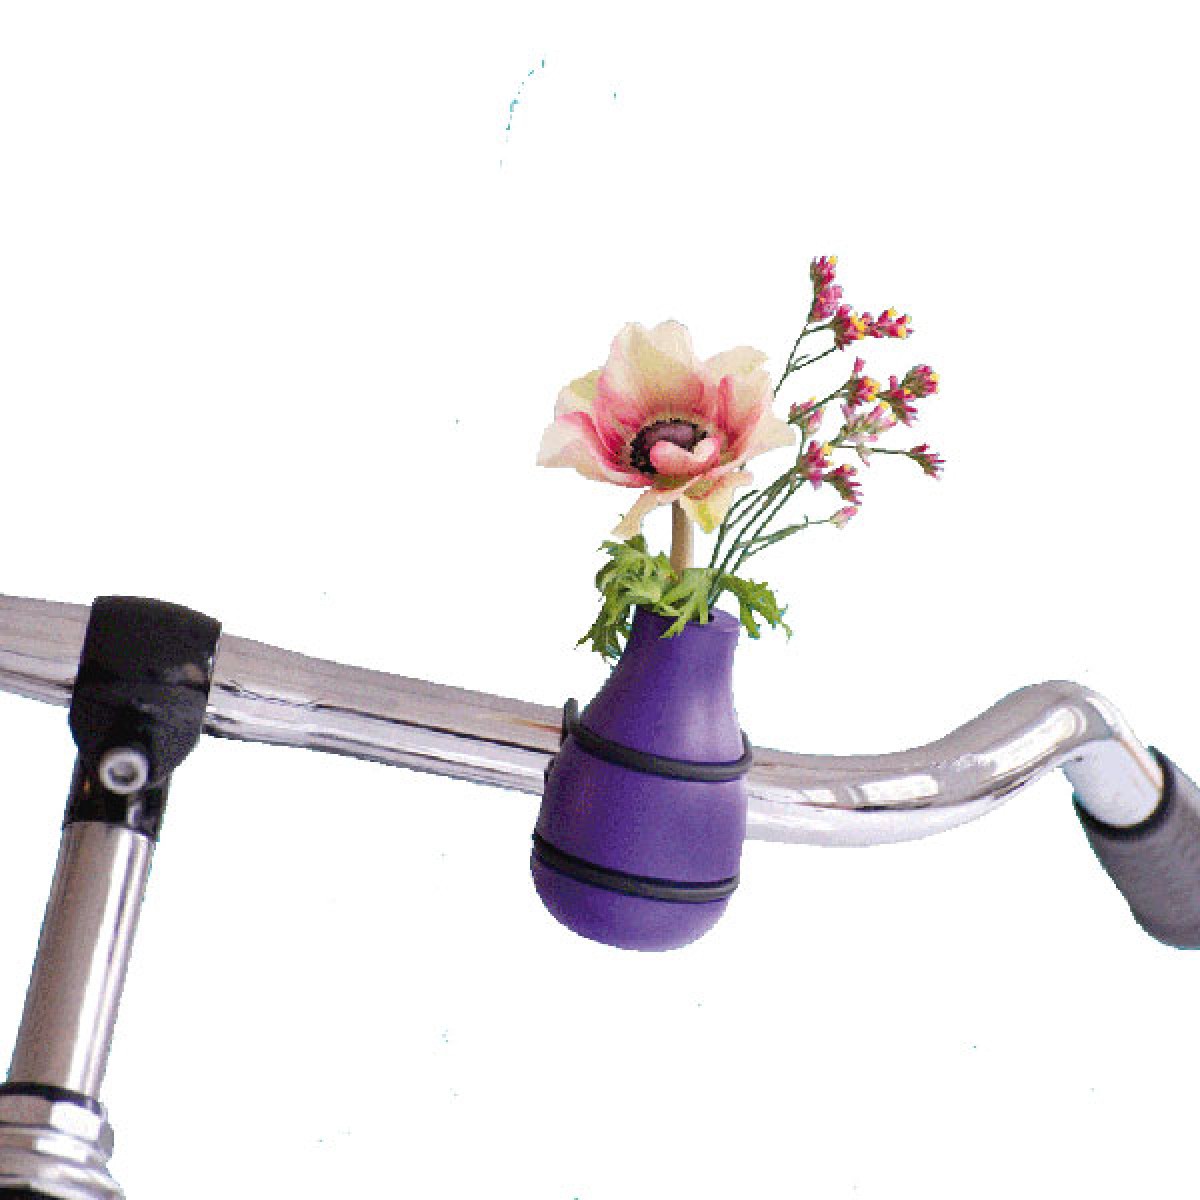 frieda
Vase für den Fahrradlenker